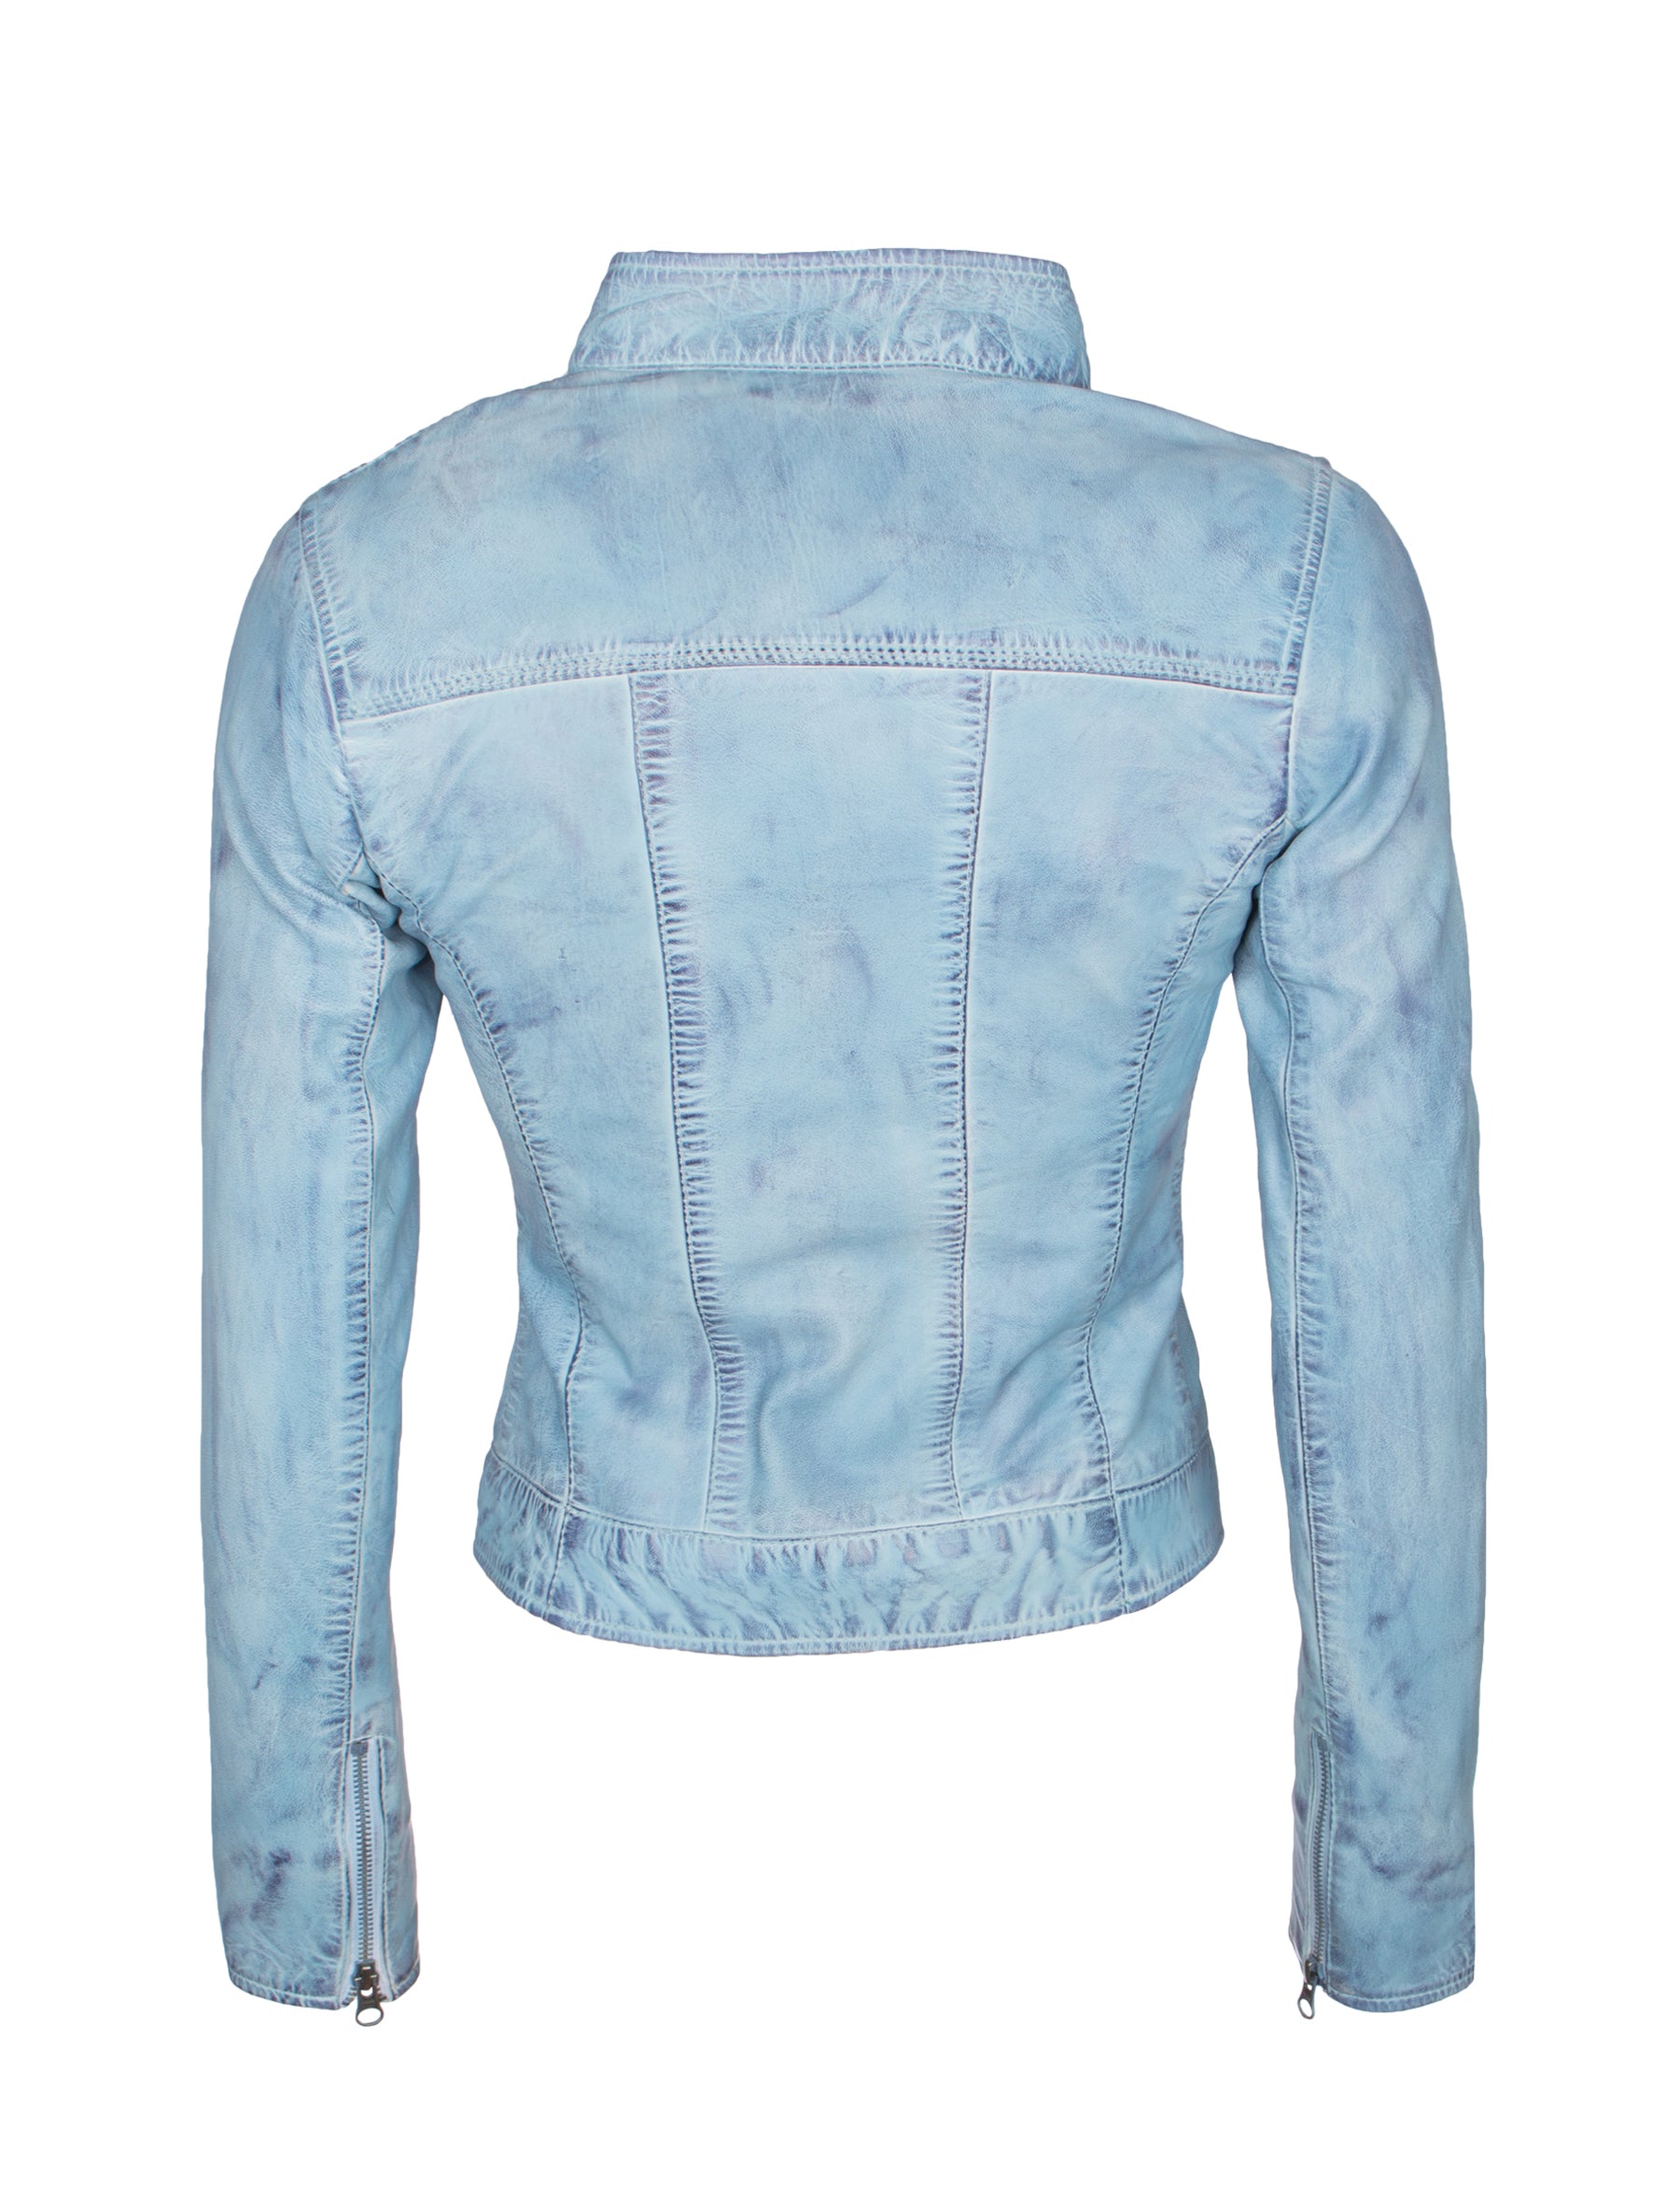 Kurze Damen Lederjacke in Jeans farben/ hellblau mit Stehkragen - Mary in crust blue